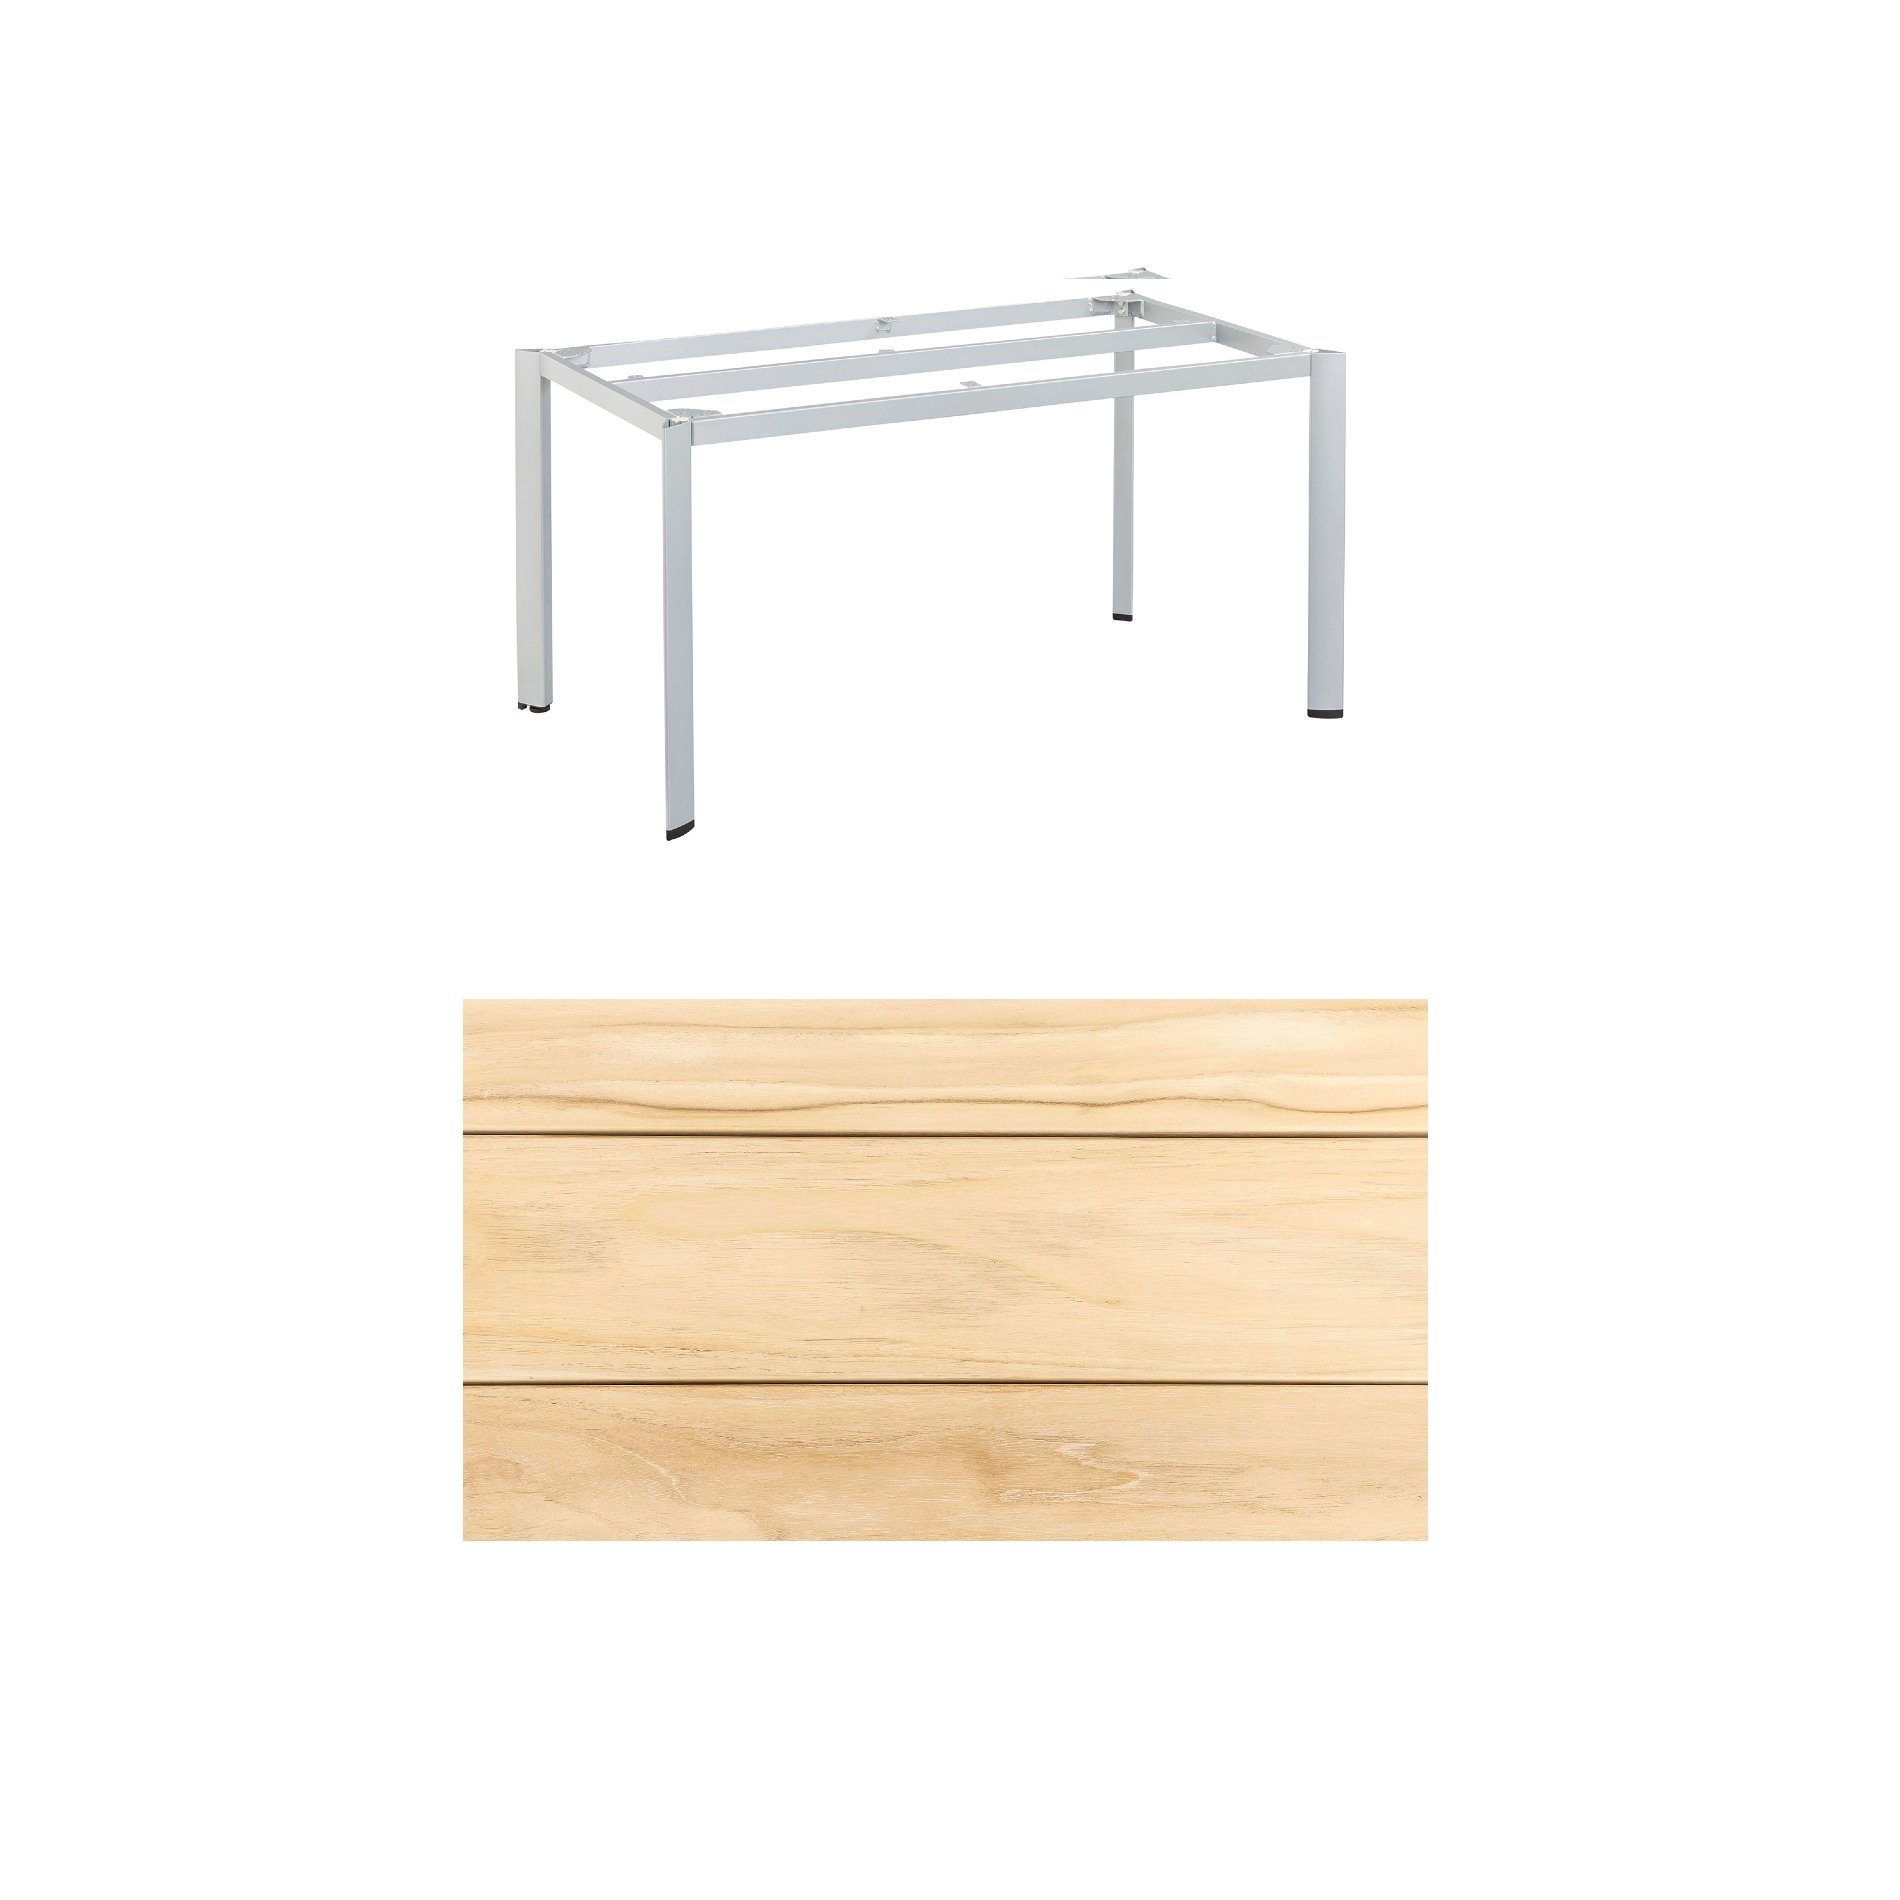 Kettler "Edge" Gartentisch, Tischgestell 140x70cm, Alu silber, mit Tischplatte Teak